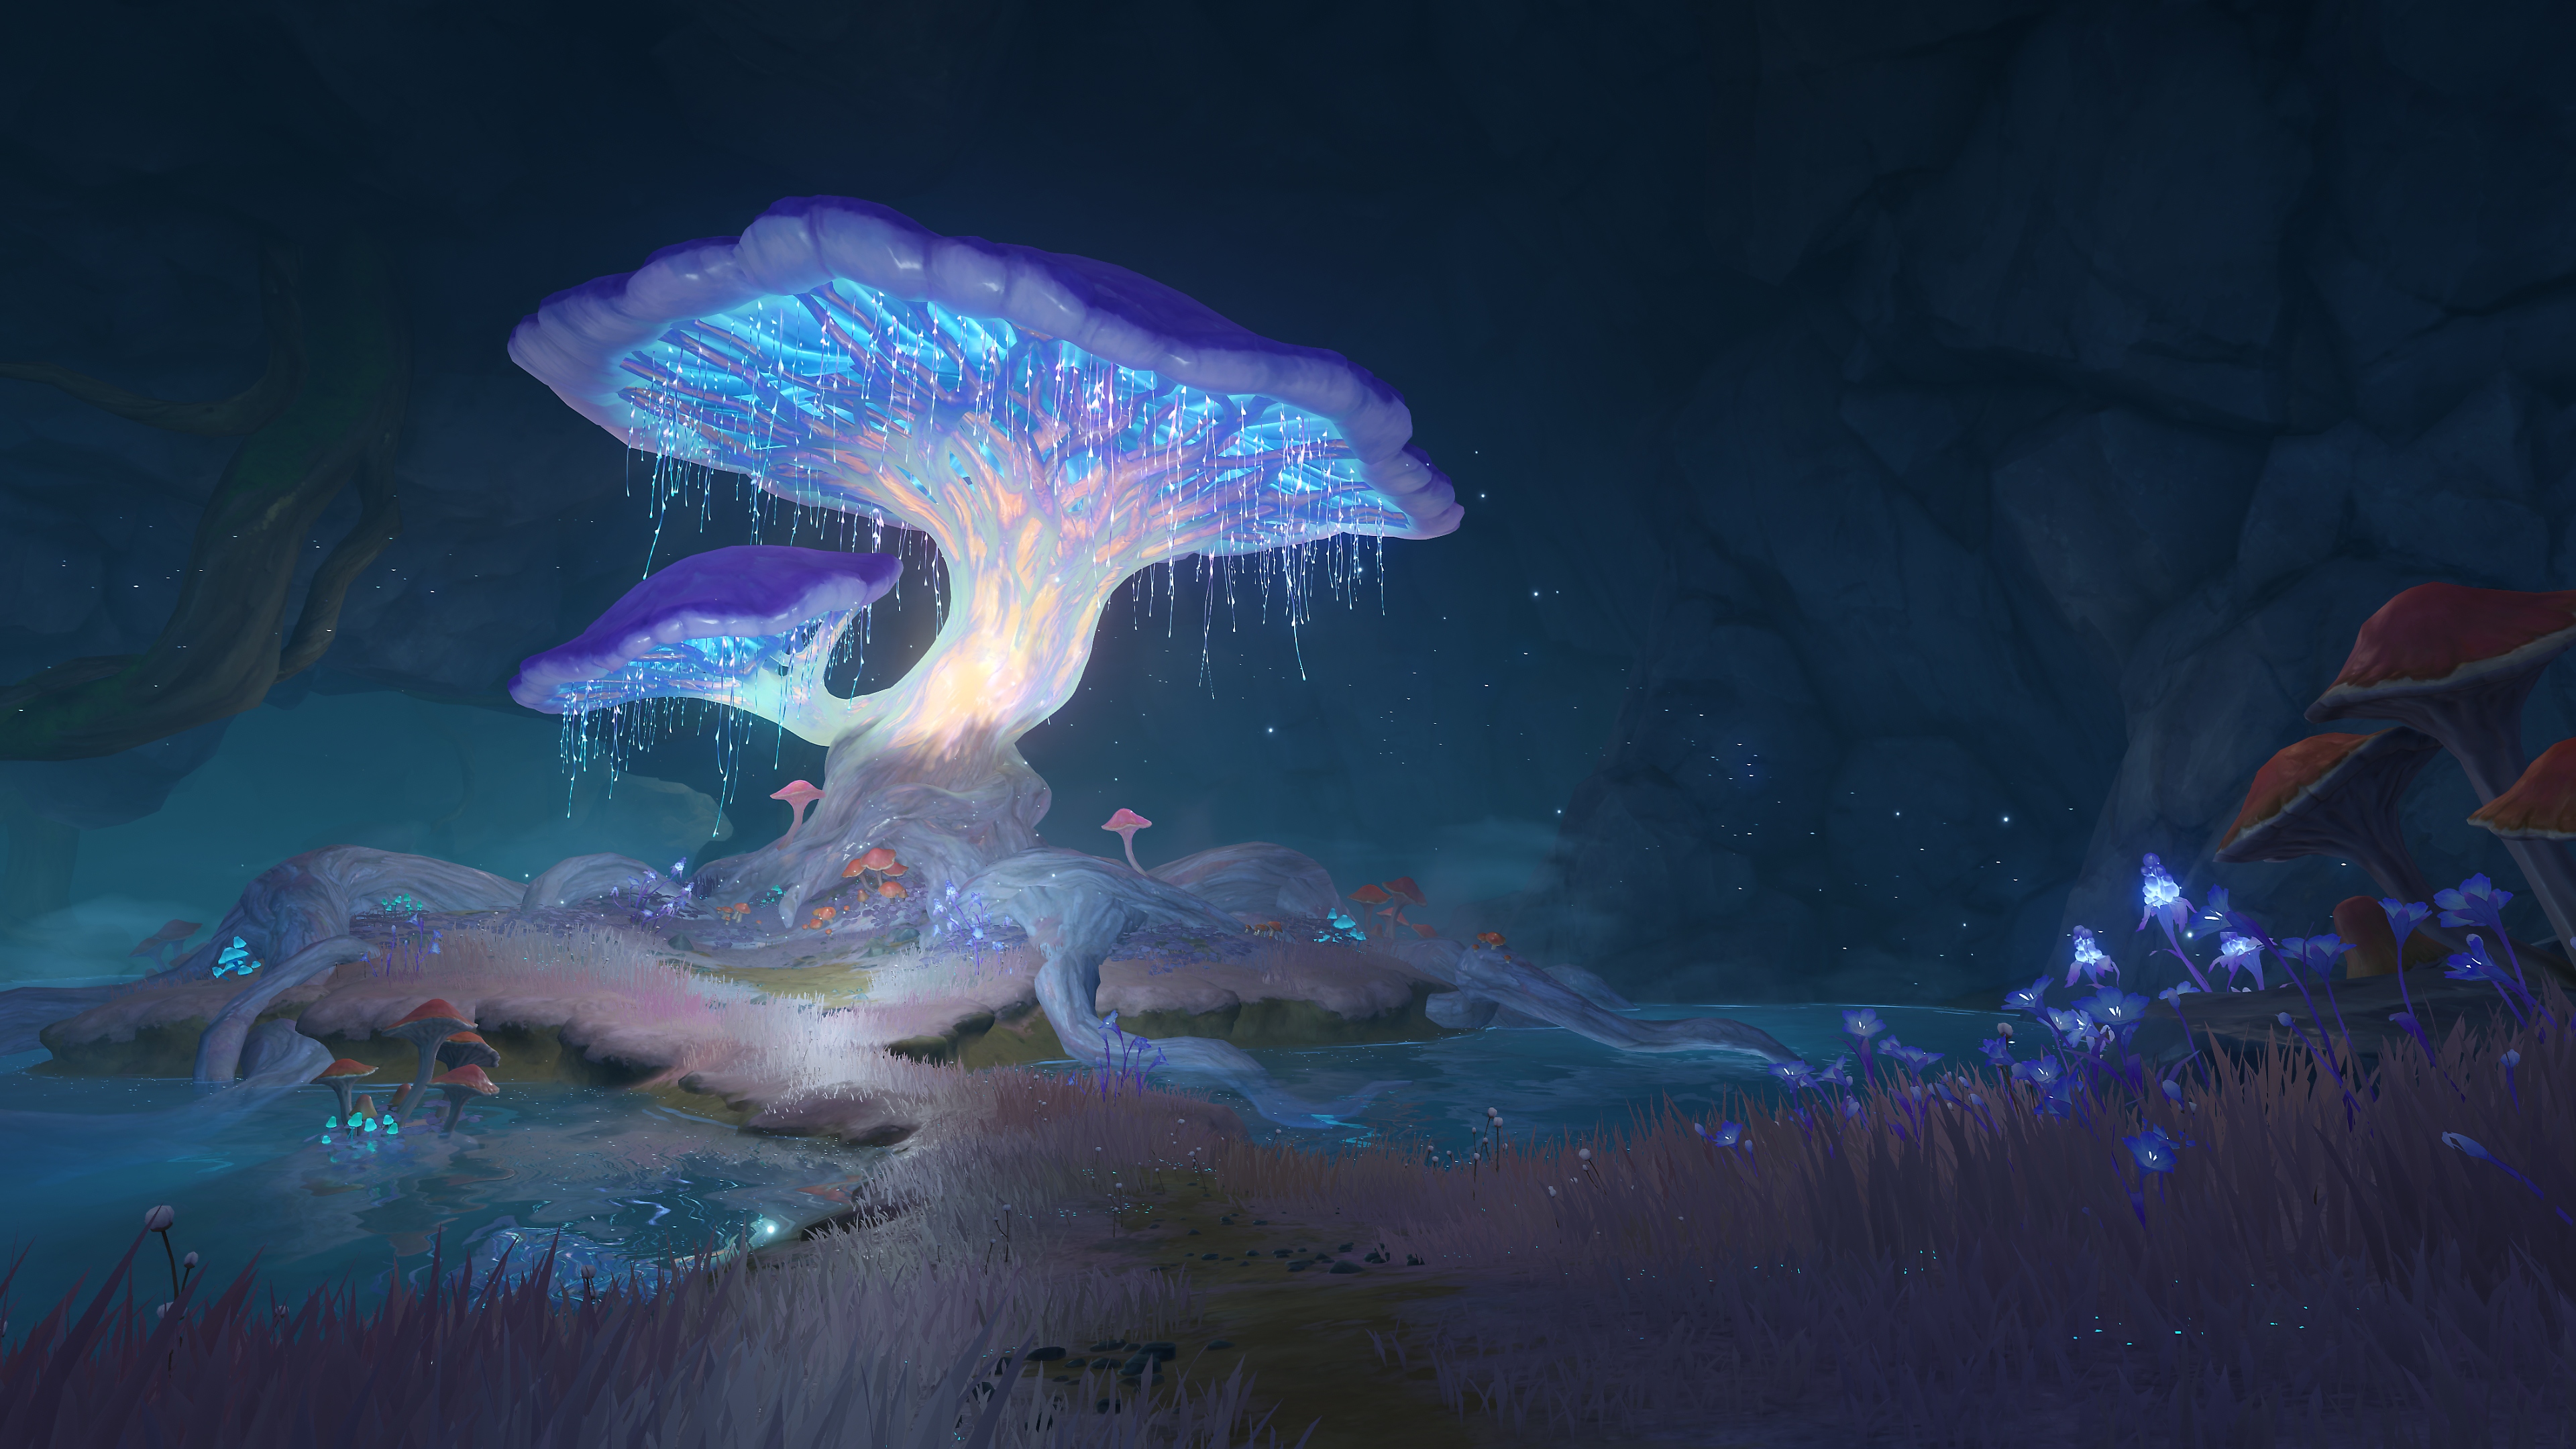 Genshin Impact: Atualização 2.6 - Captura de tela mostrando um cogumelo brilhante em um local que parece uma caverna